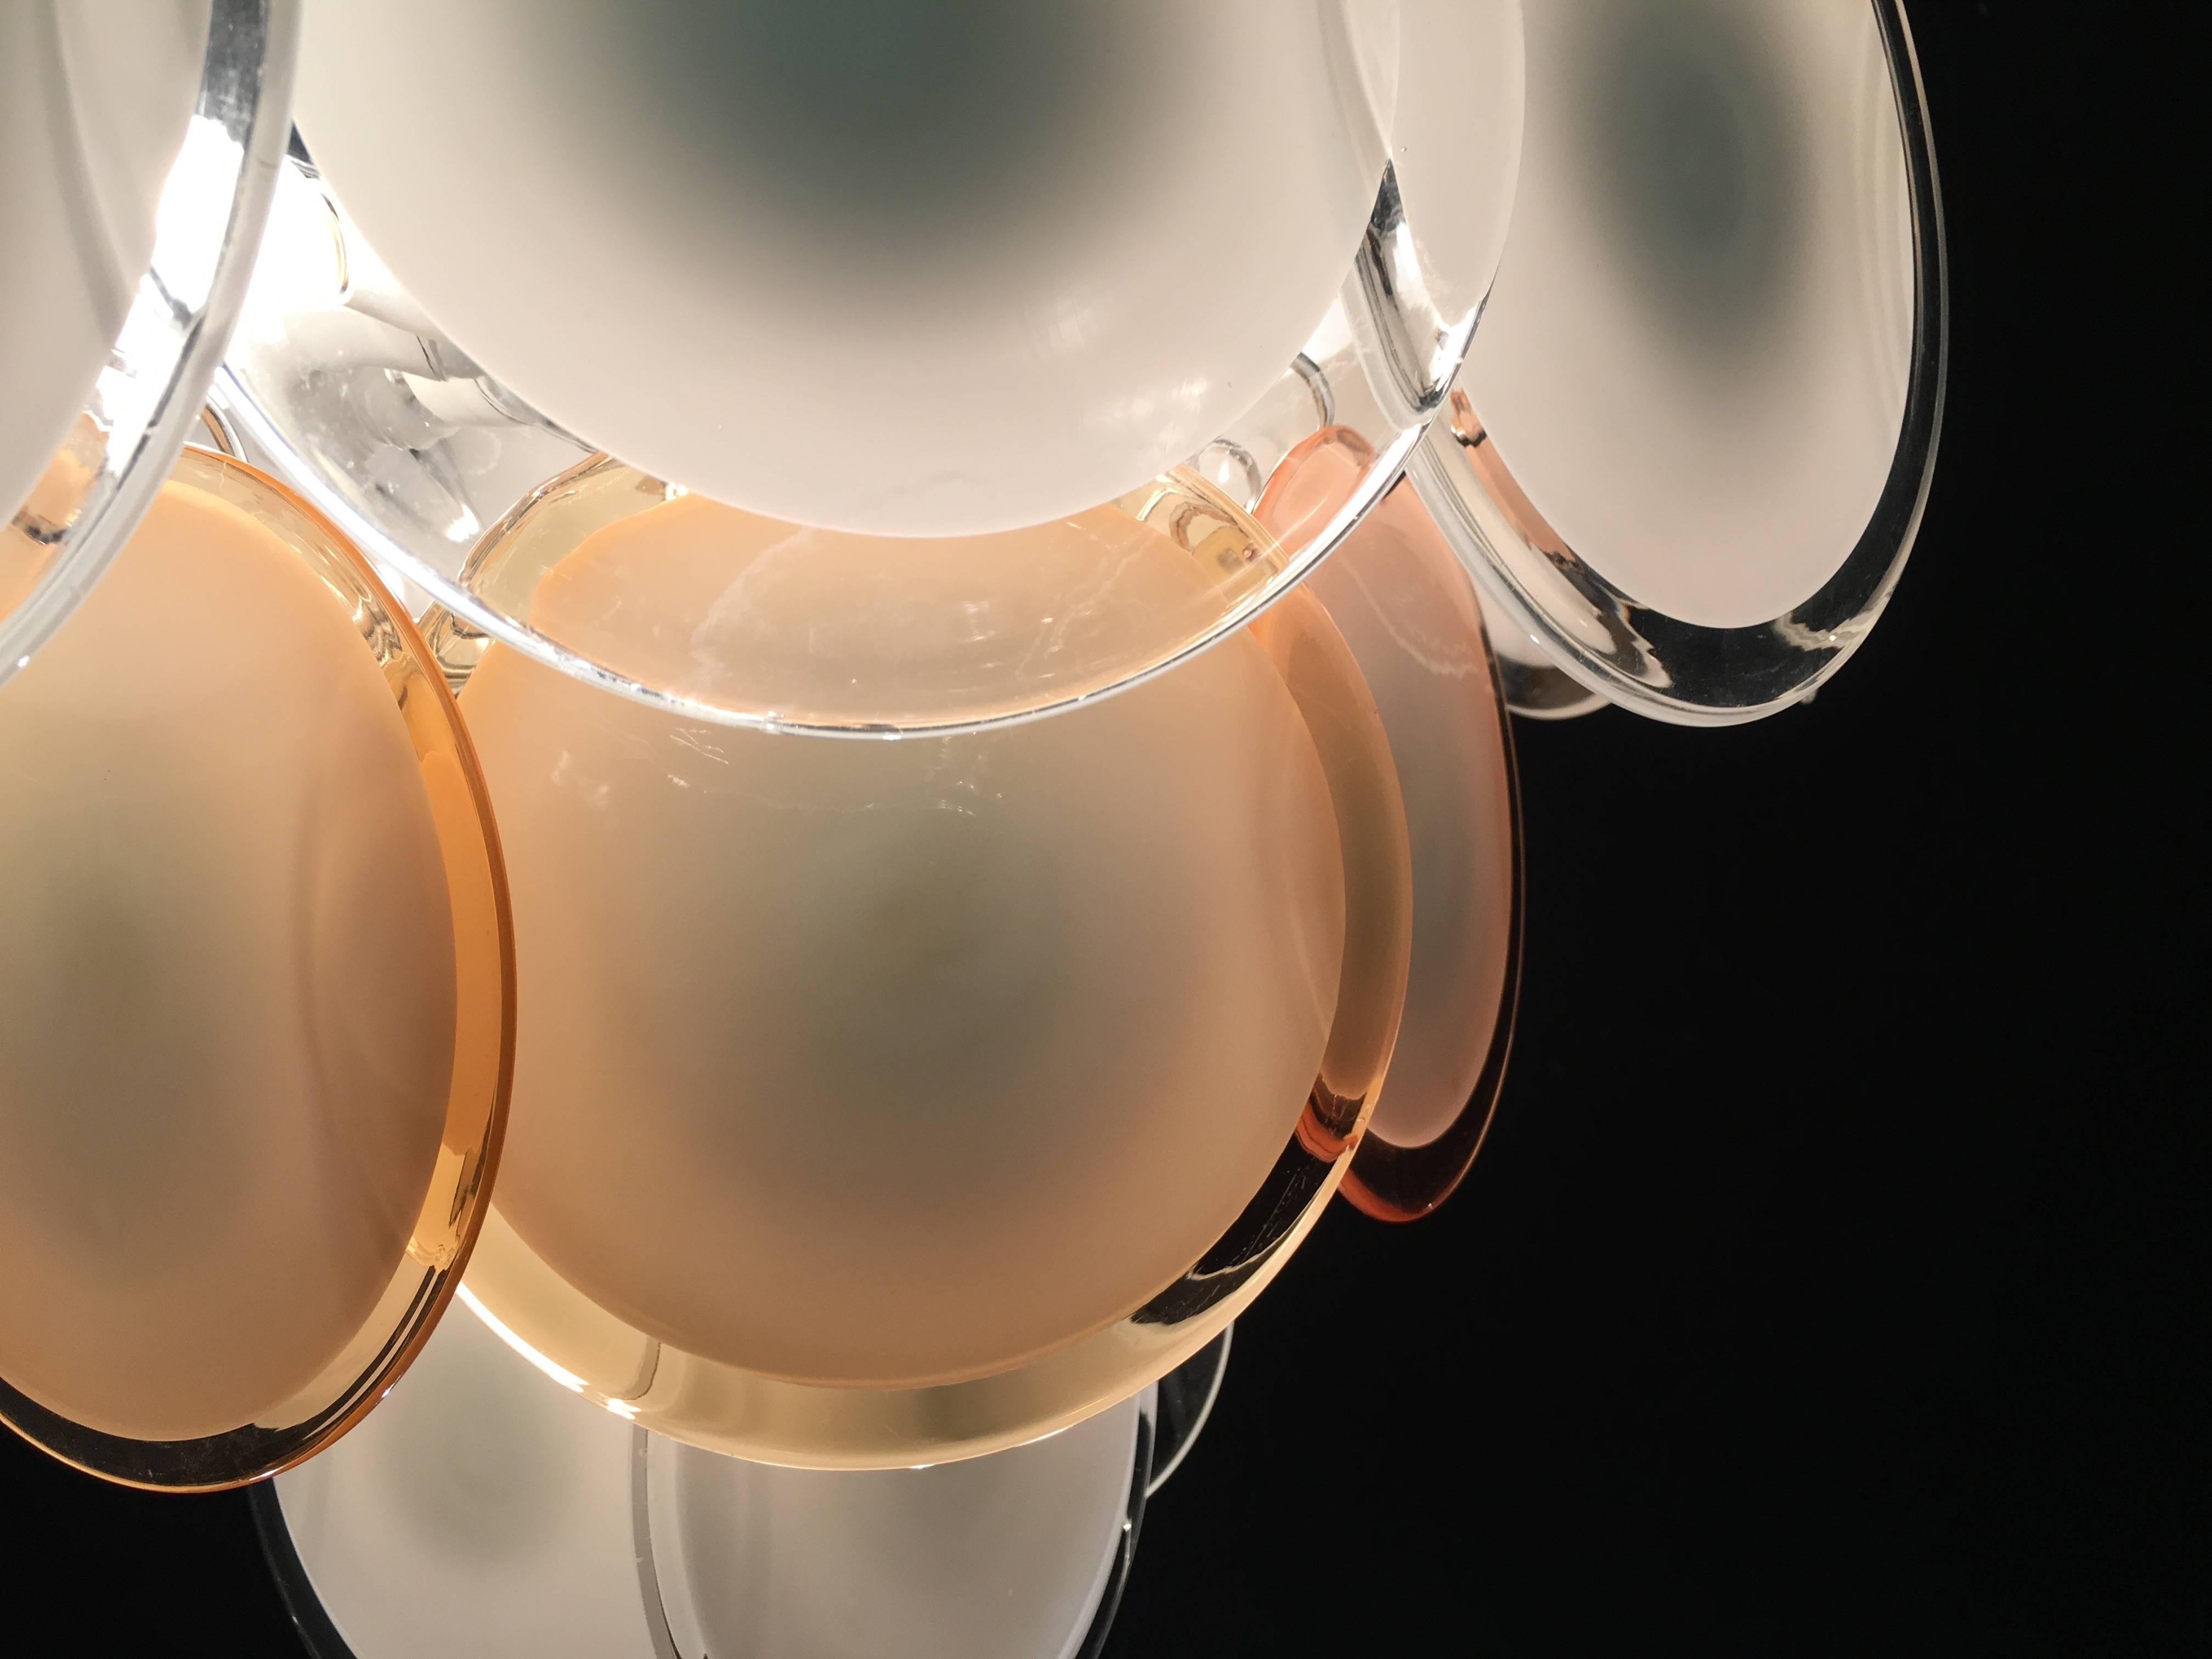 Les 24 disques blancs et miel en verre précieux de Murano sont disposés sur des niveaux de sol. Neuf lumières.
 